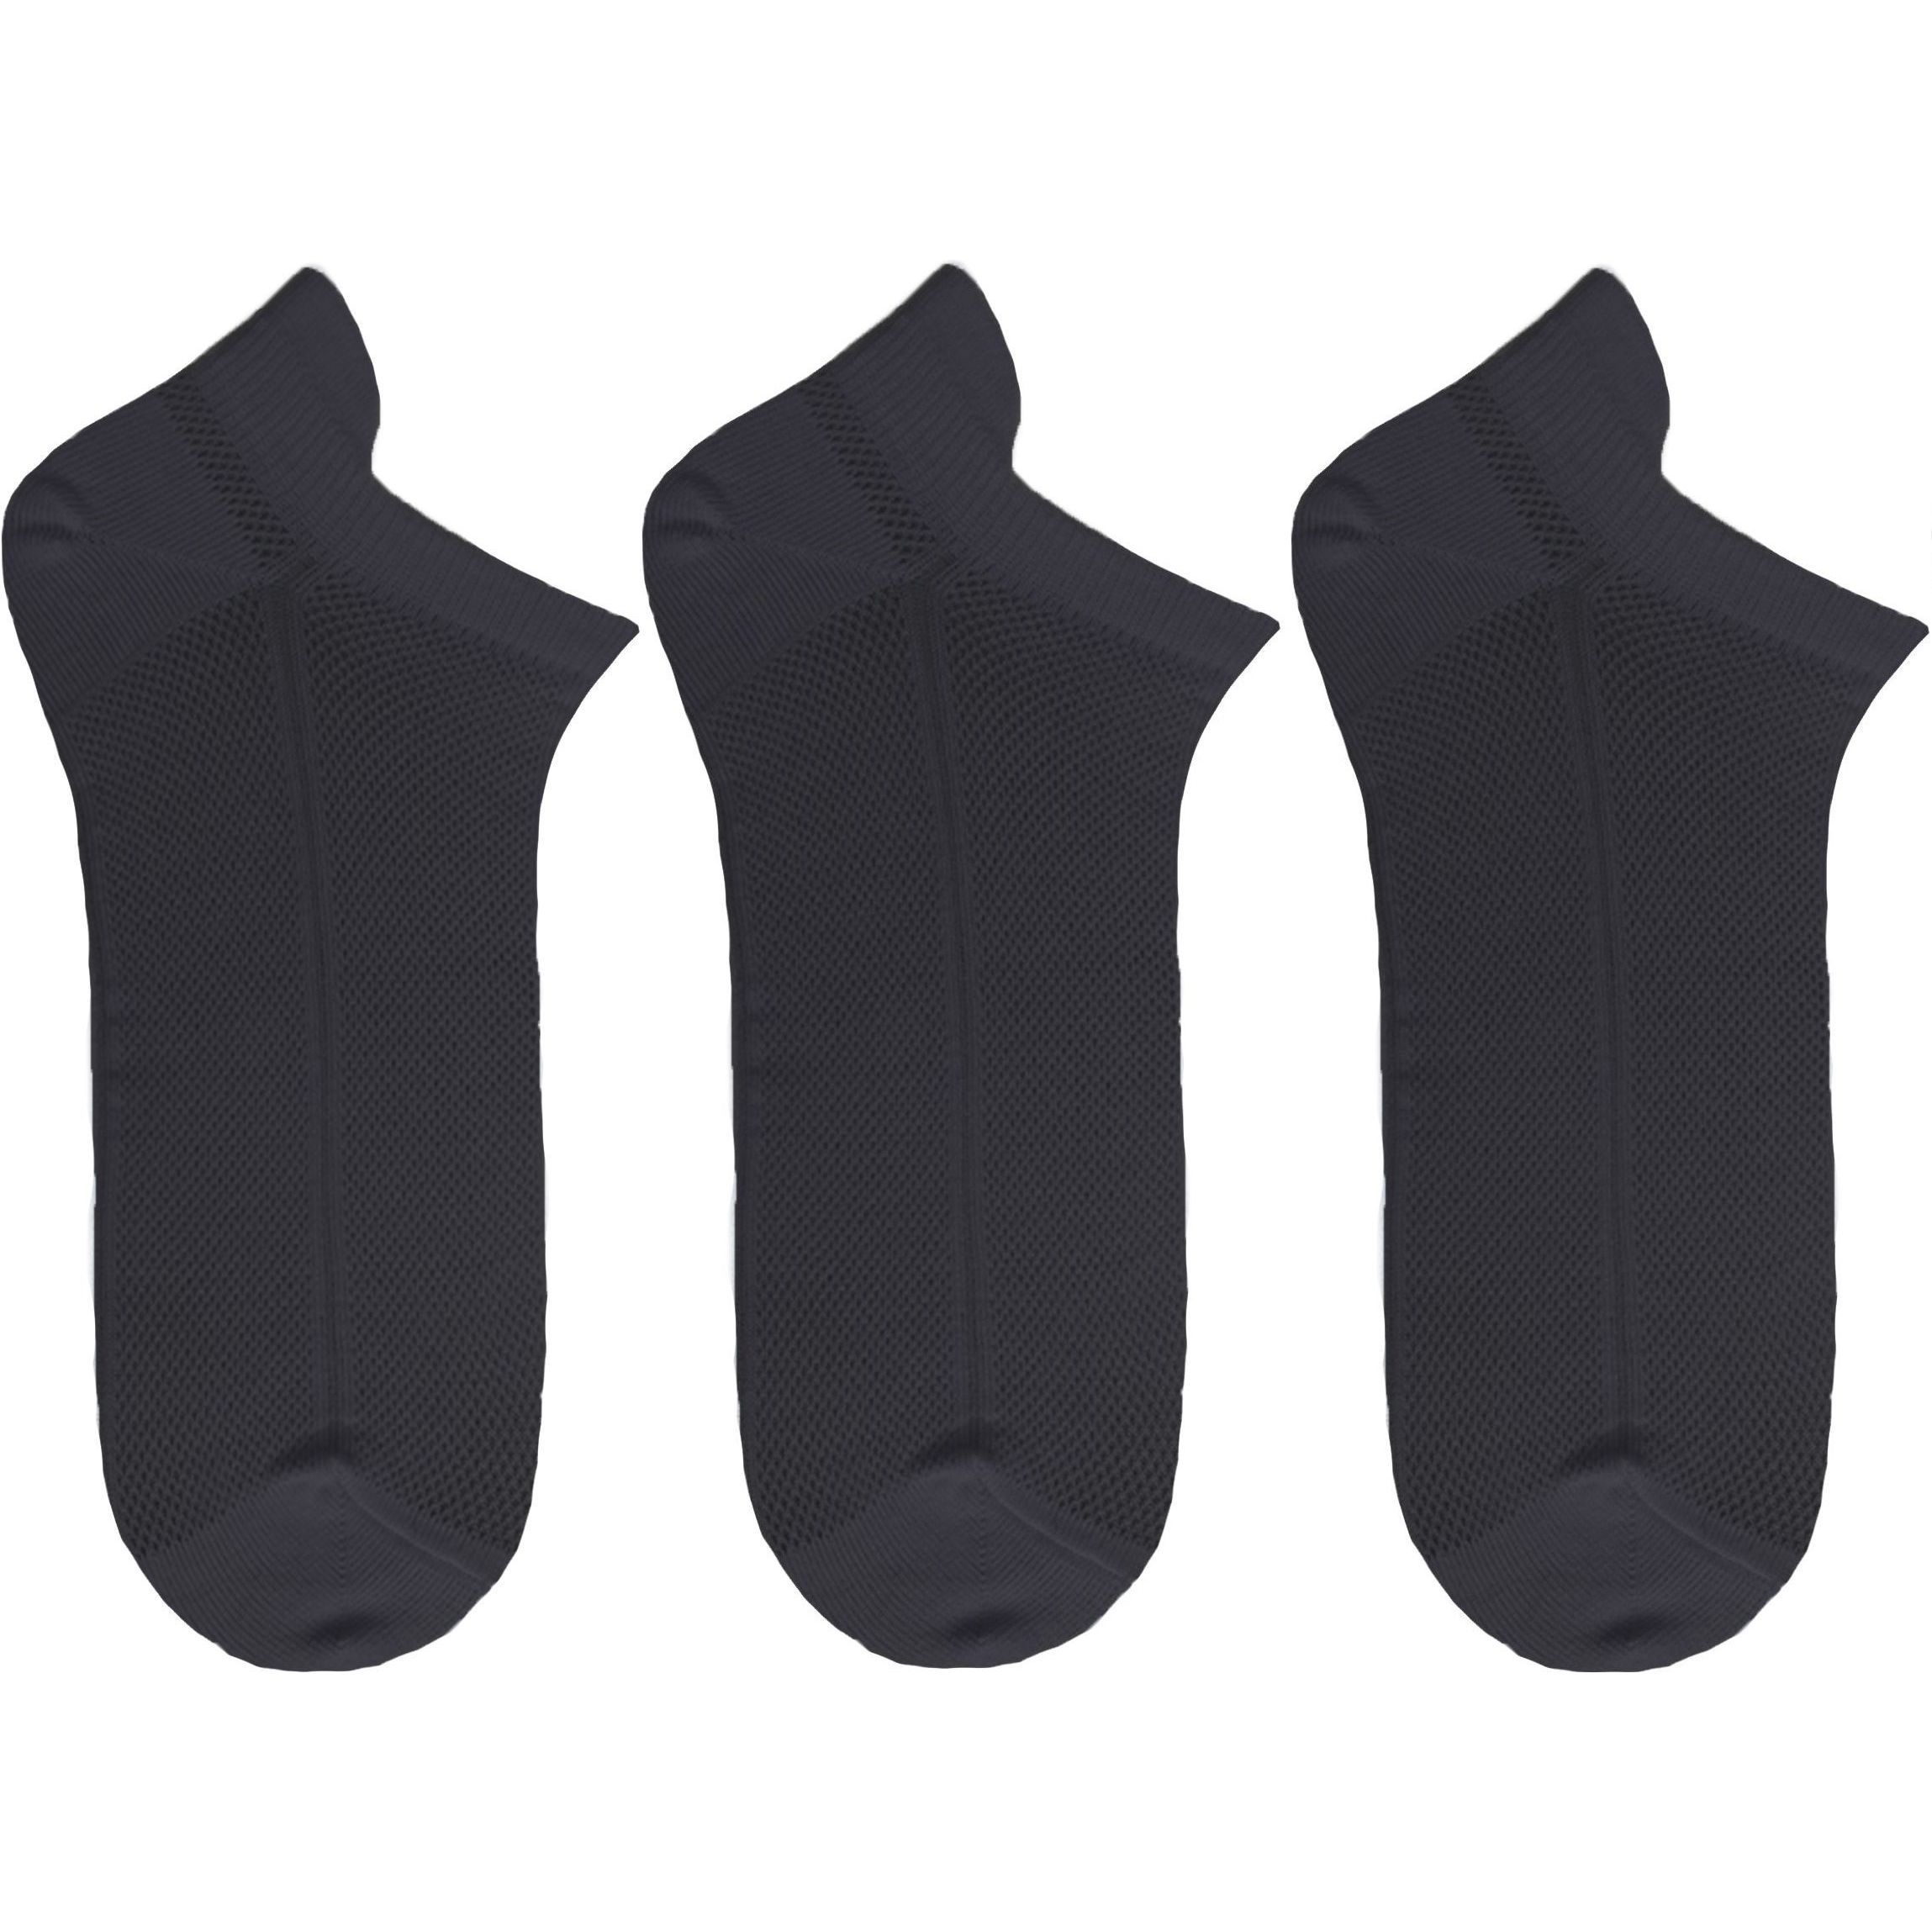 Набор носков женских Premier Socks 36-40 3 пары черные (4820163319254) фото 1